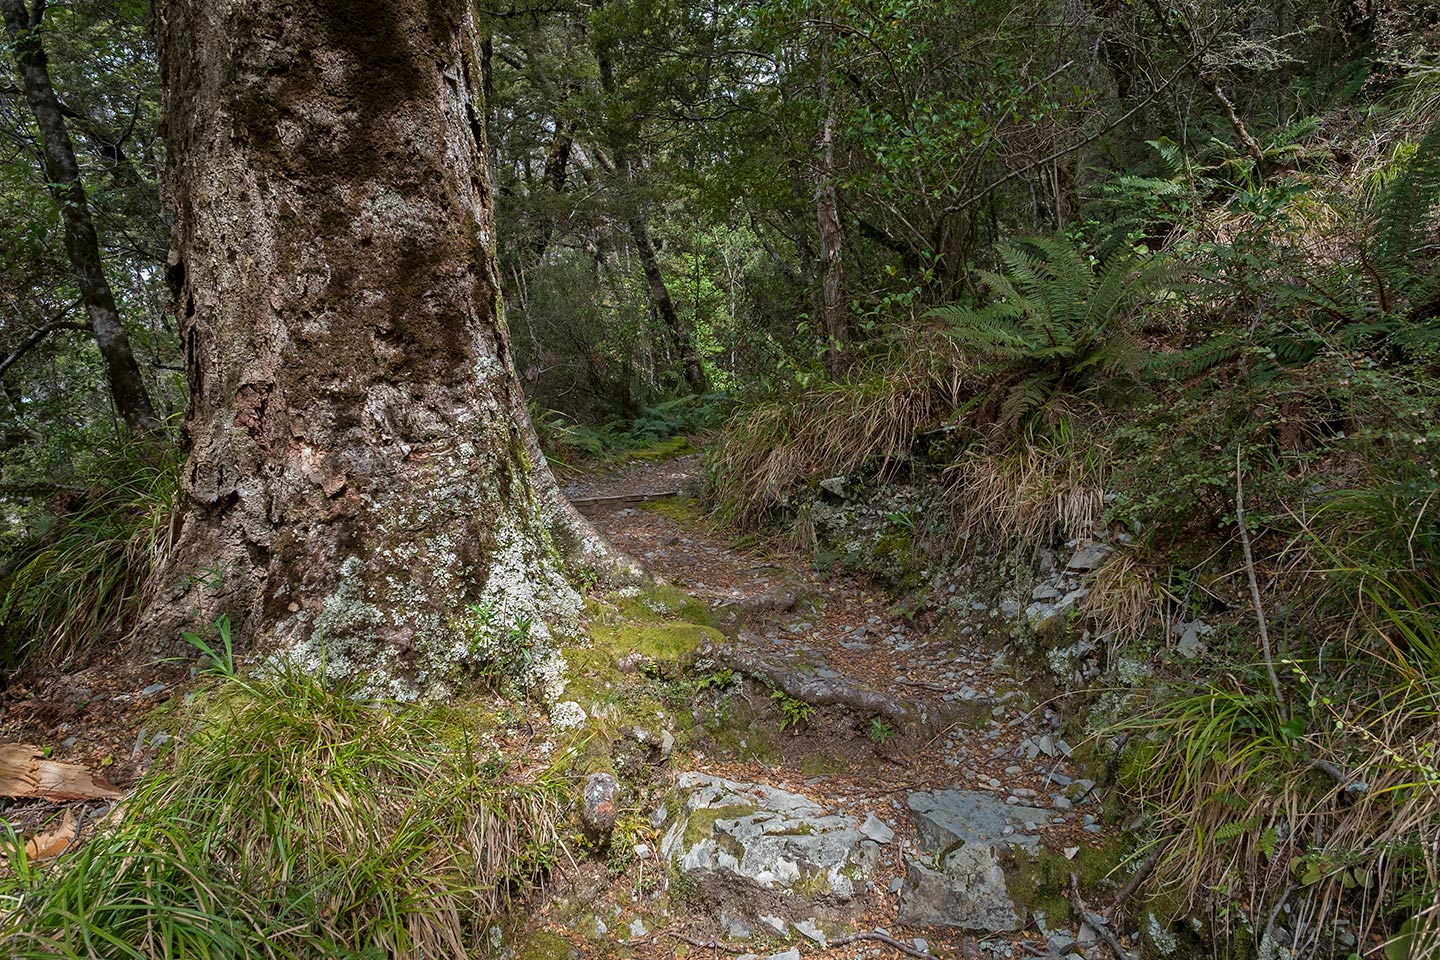 Governors Bush Walk, Aoraki Mount Cook National Park, New Zealand